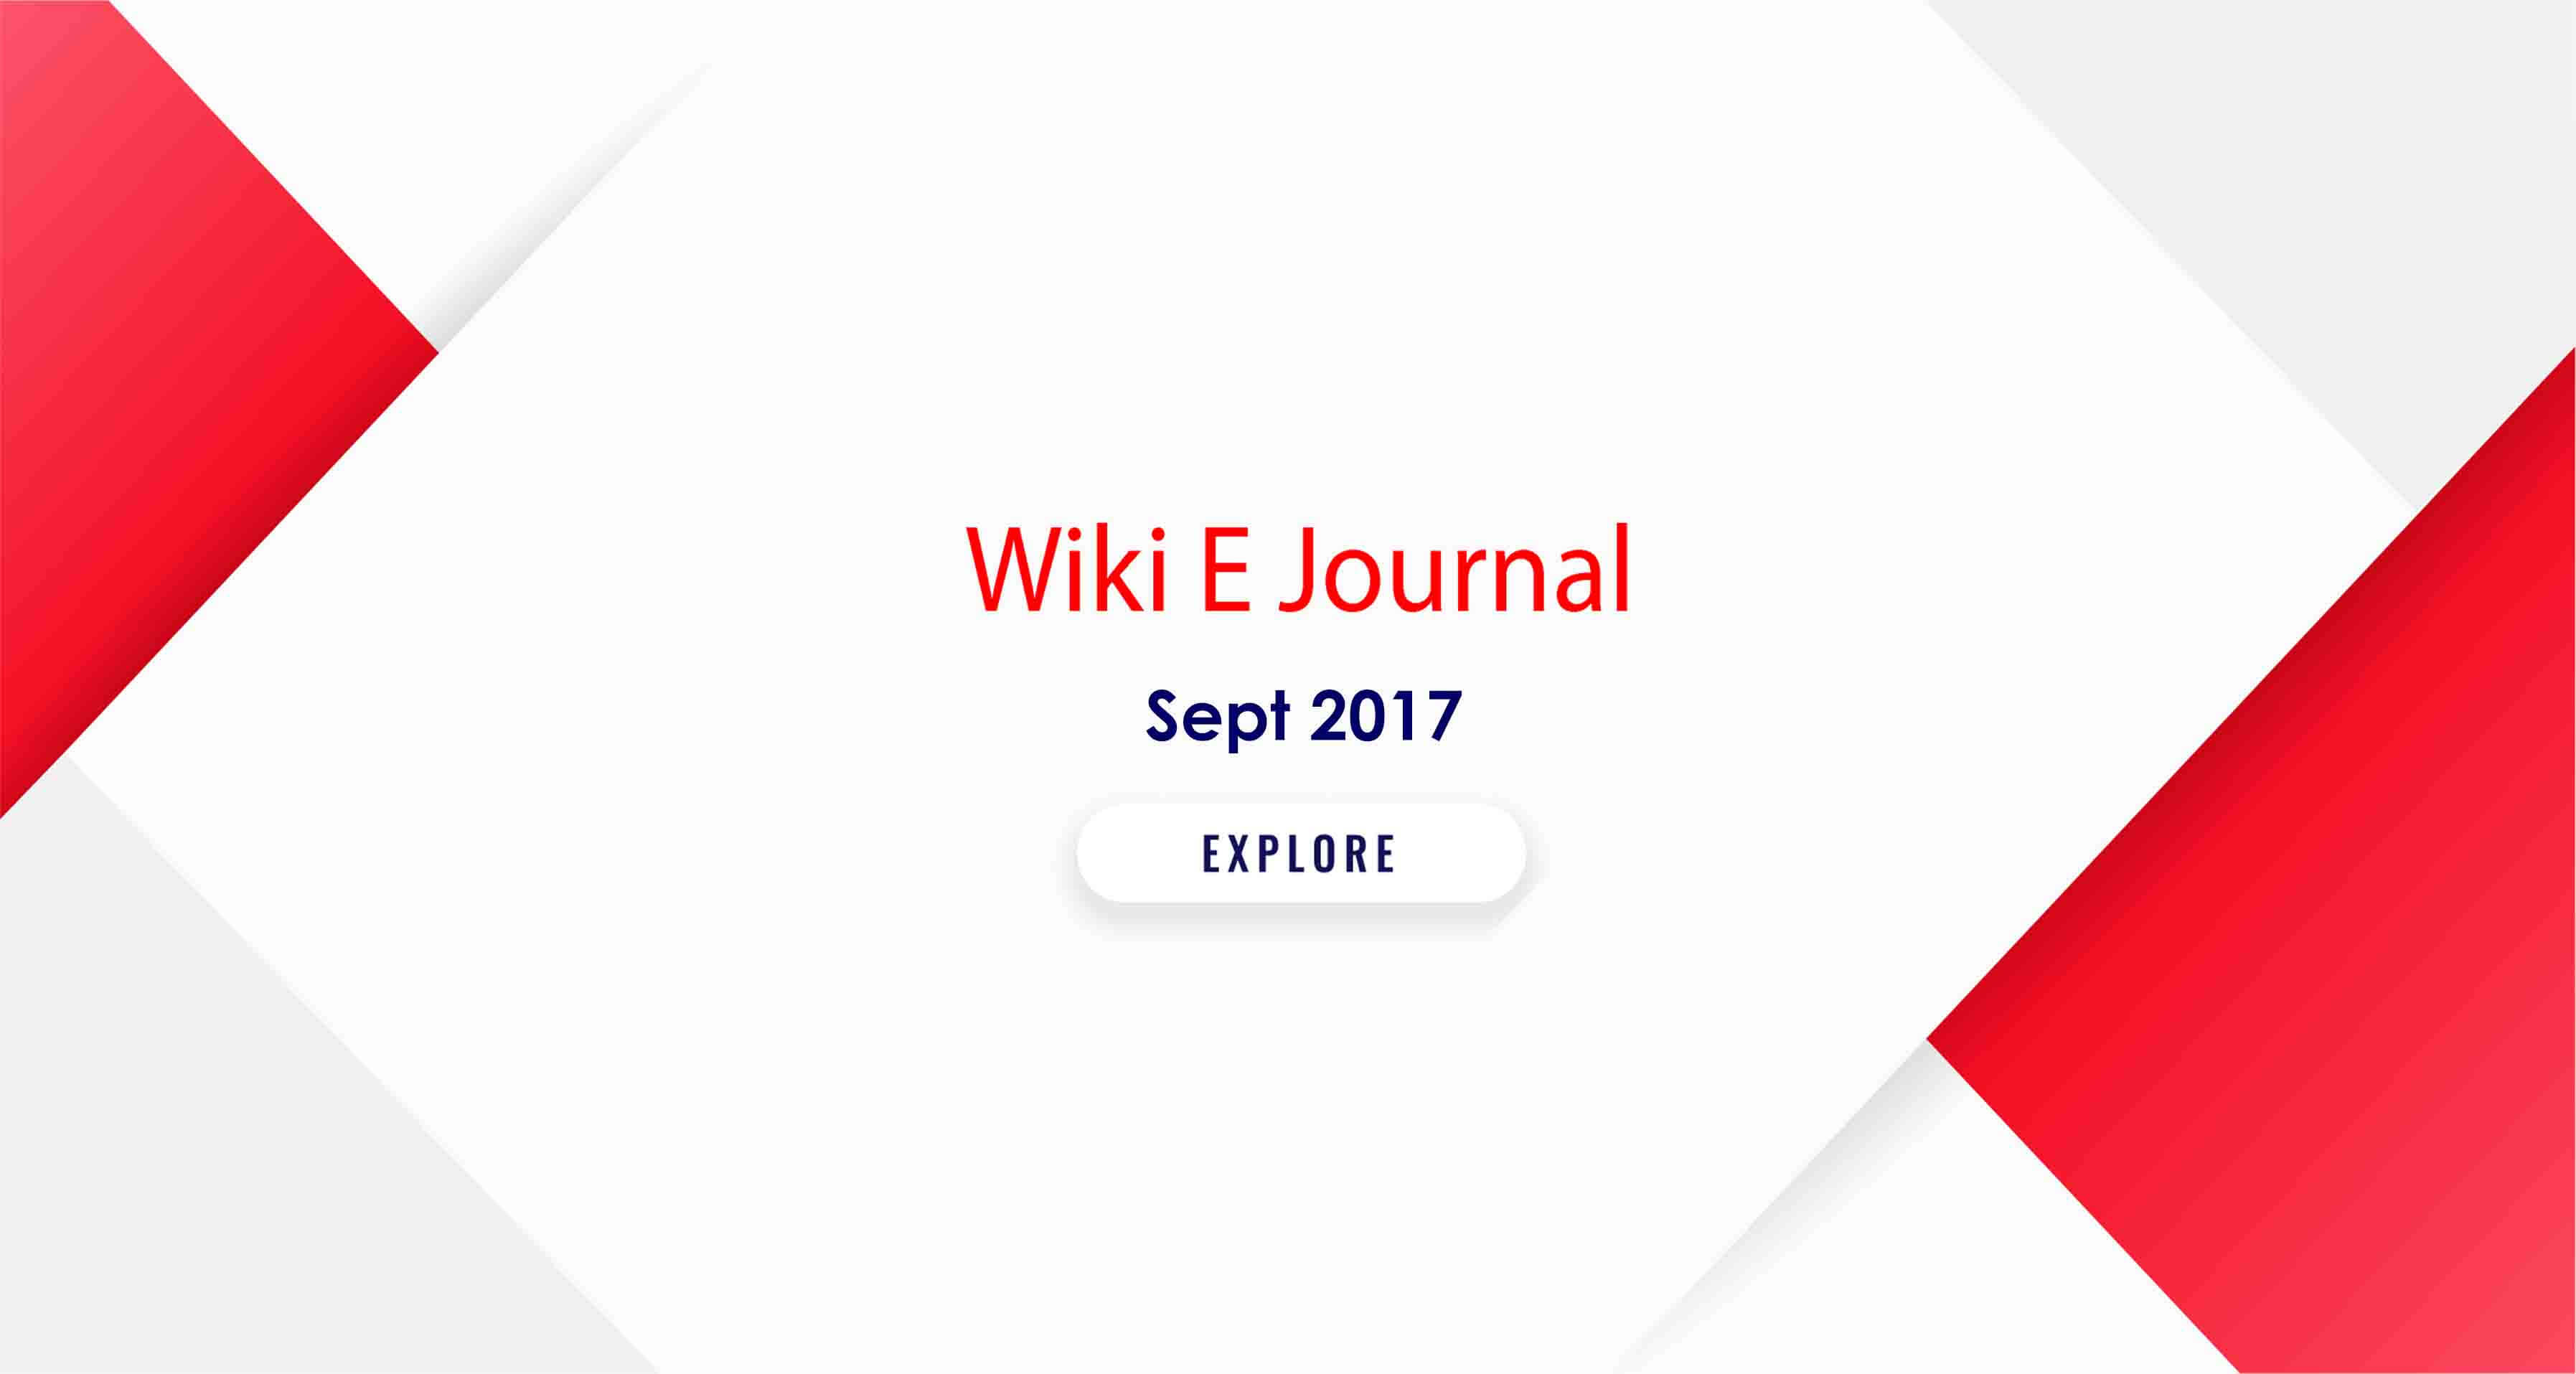 SBS WIKI E Journal Sept 2017